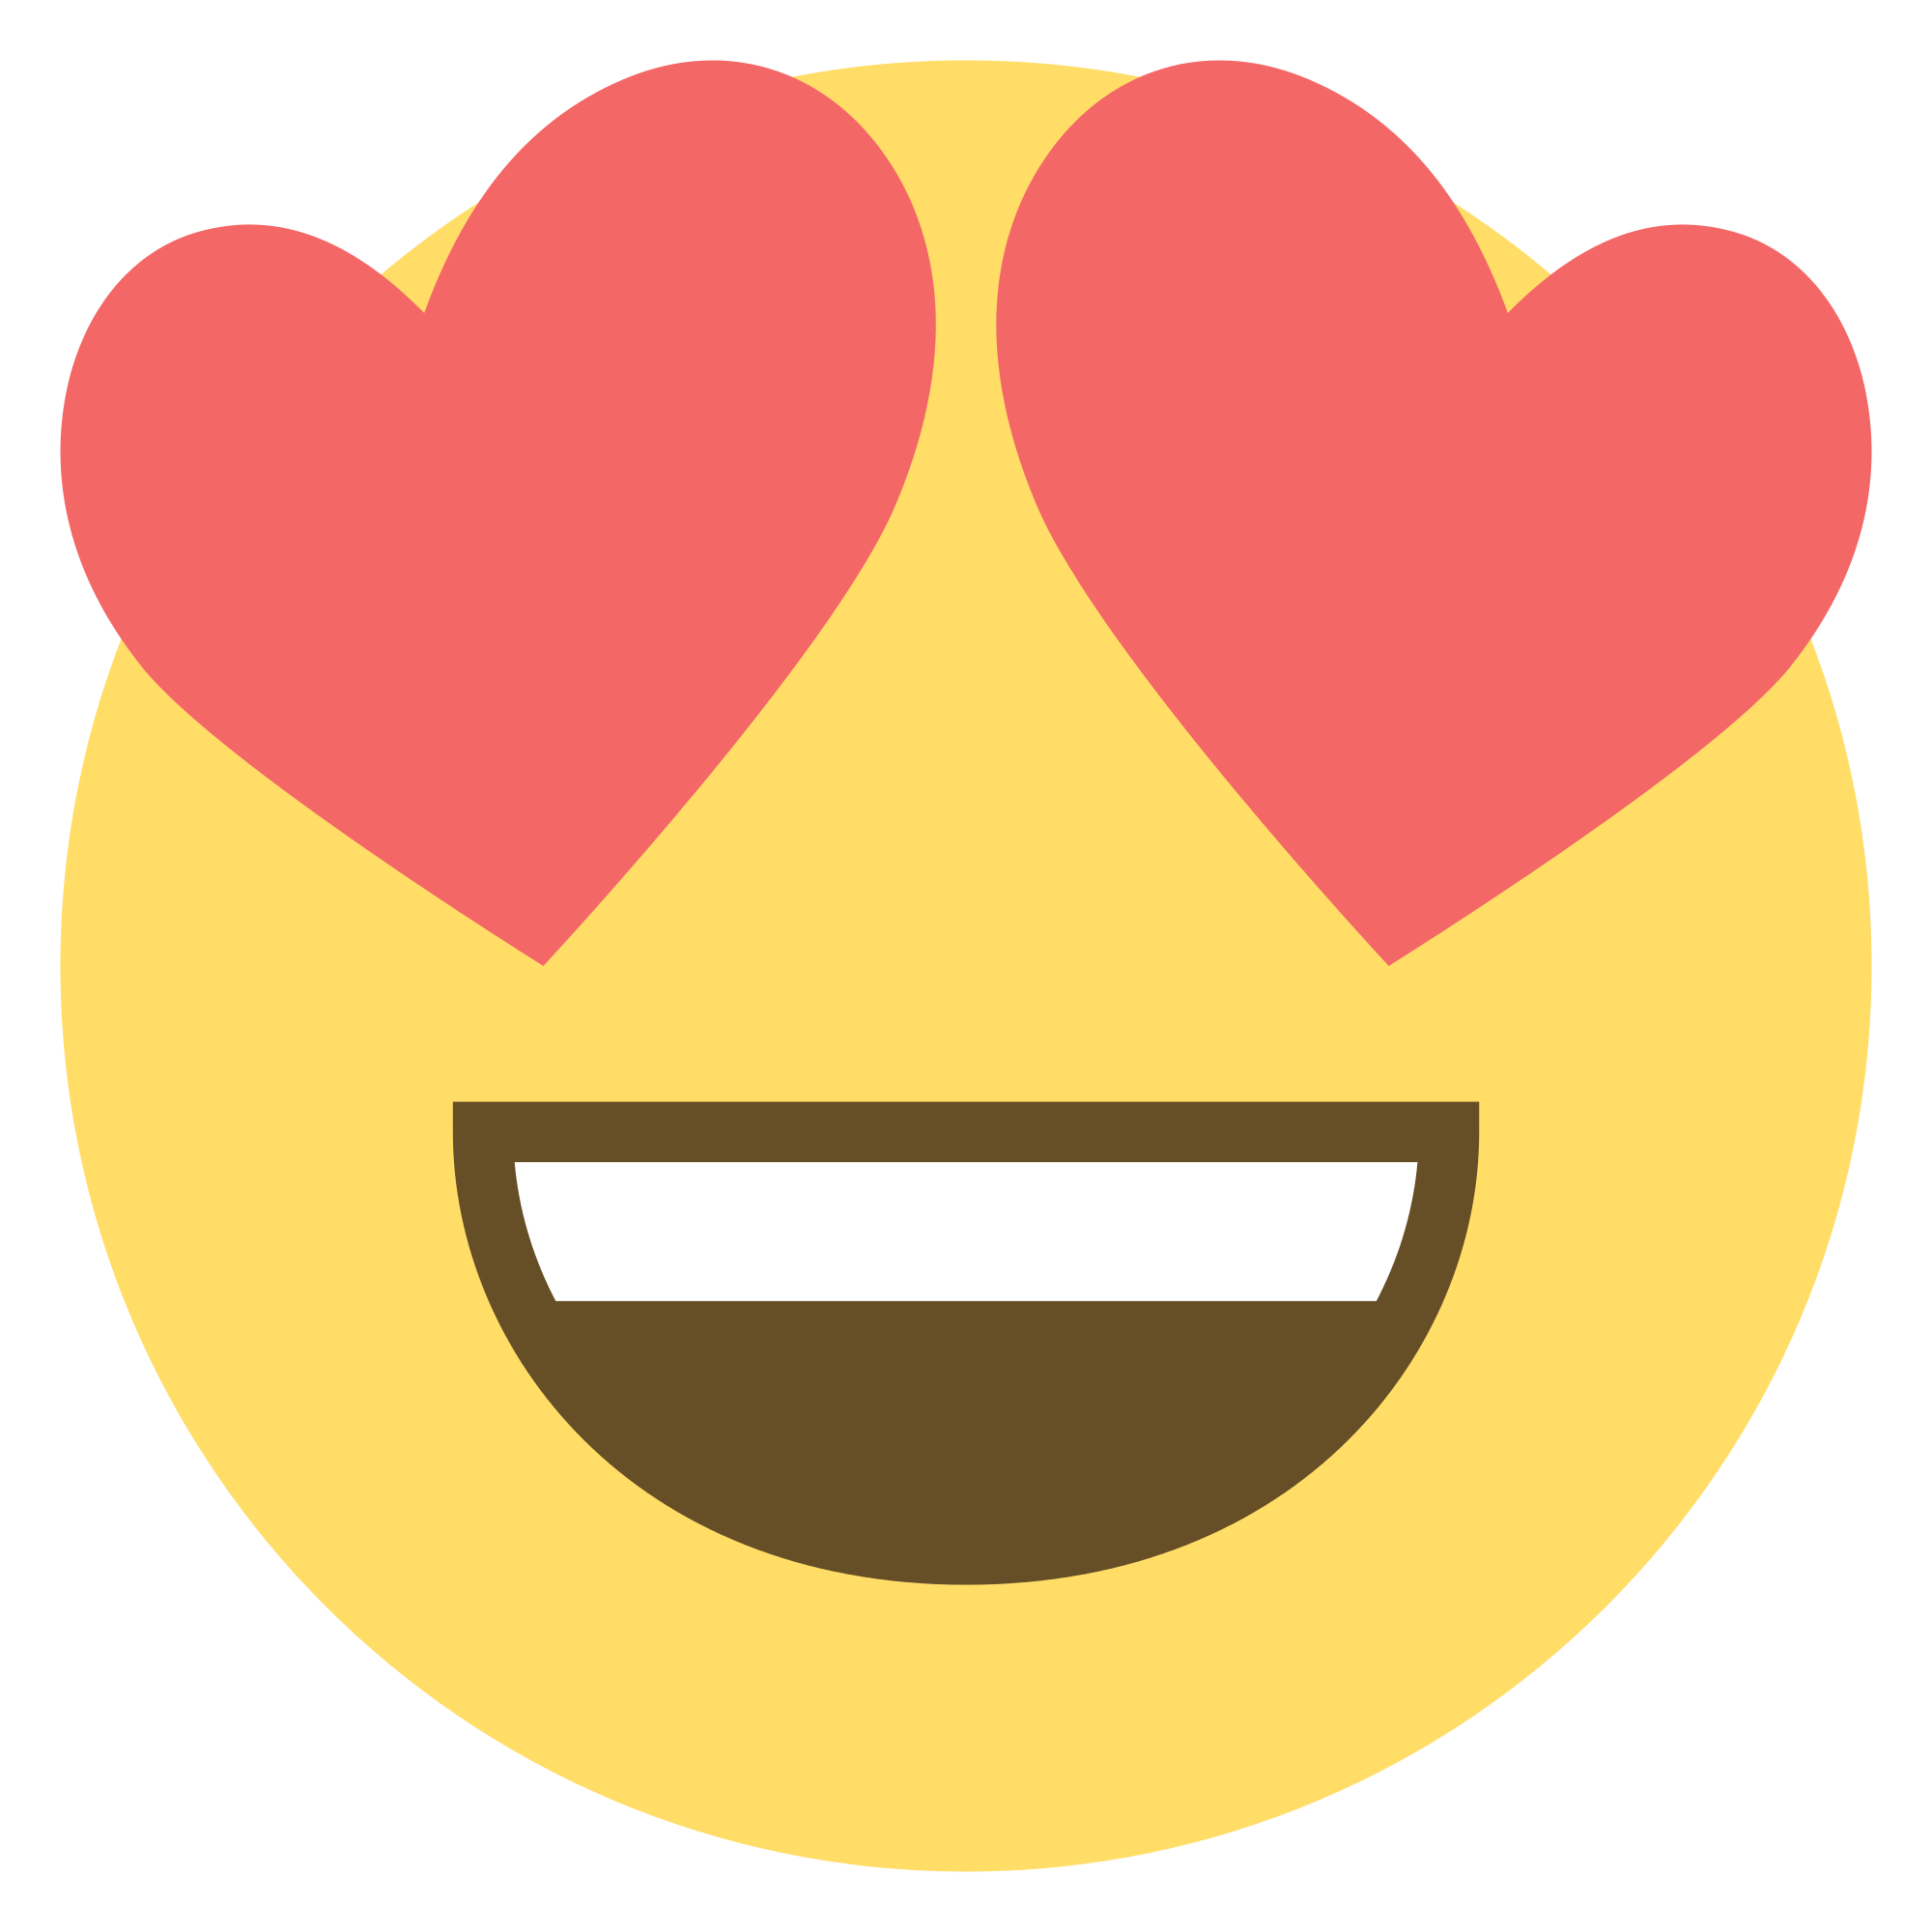 Emoji PNG Image Background